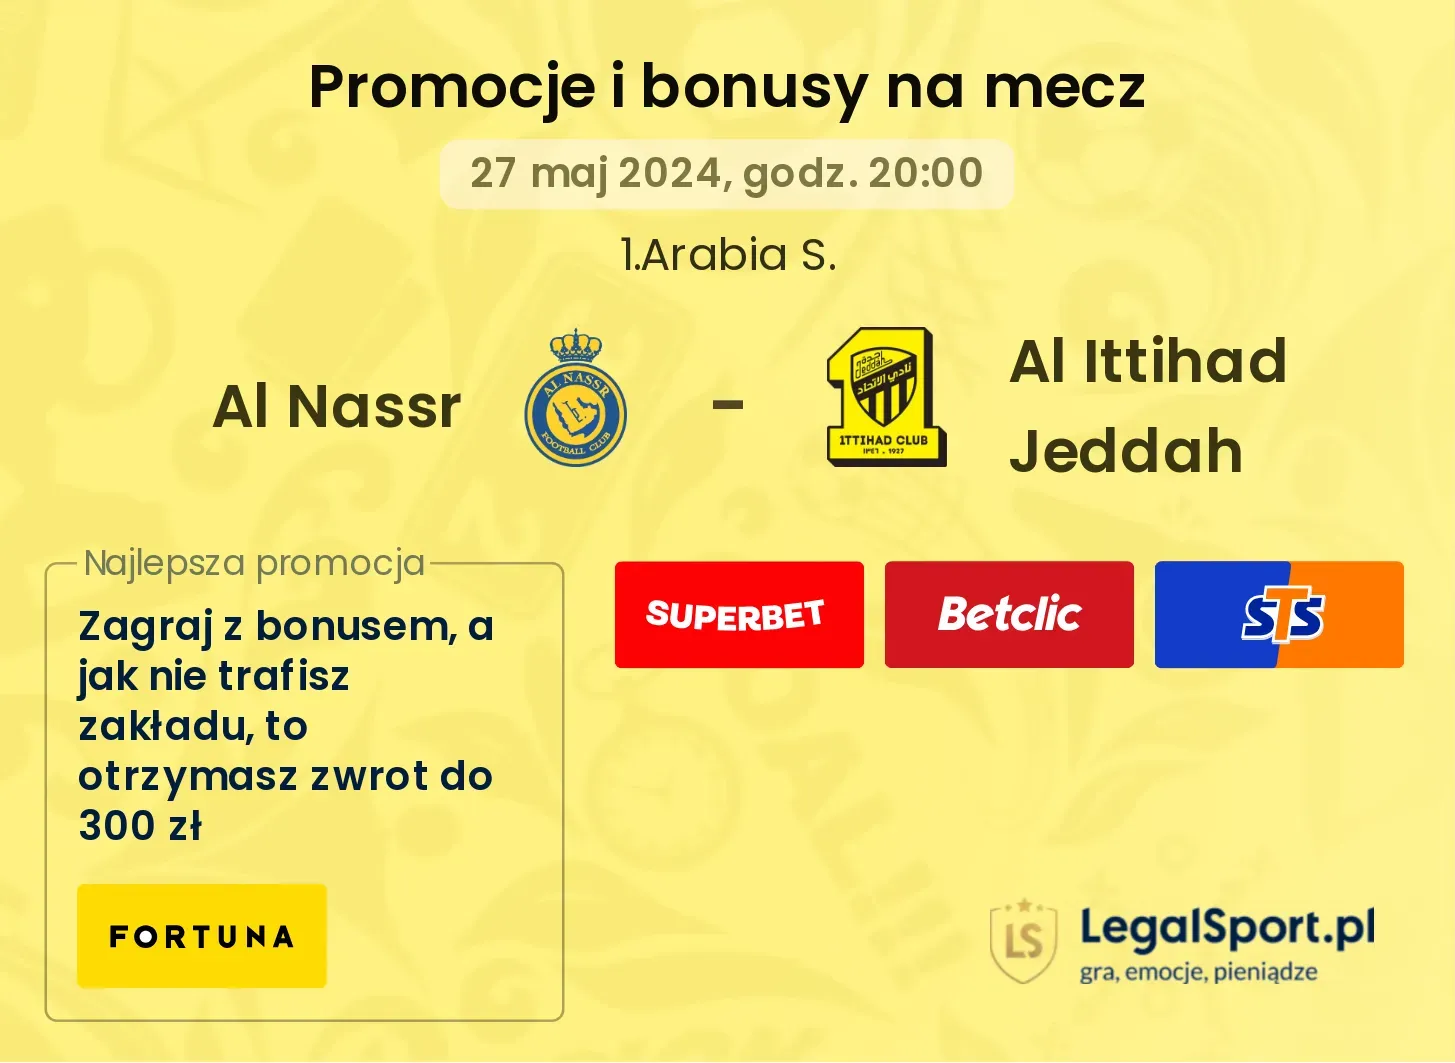 Al Nassr - Al Ittihad Jeddah promocje bonusy na mecz